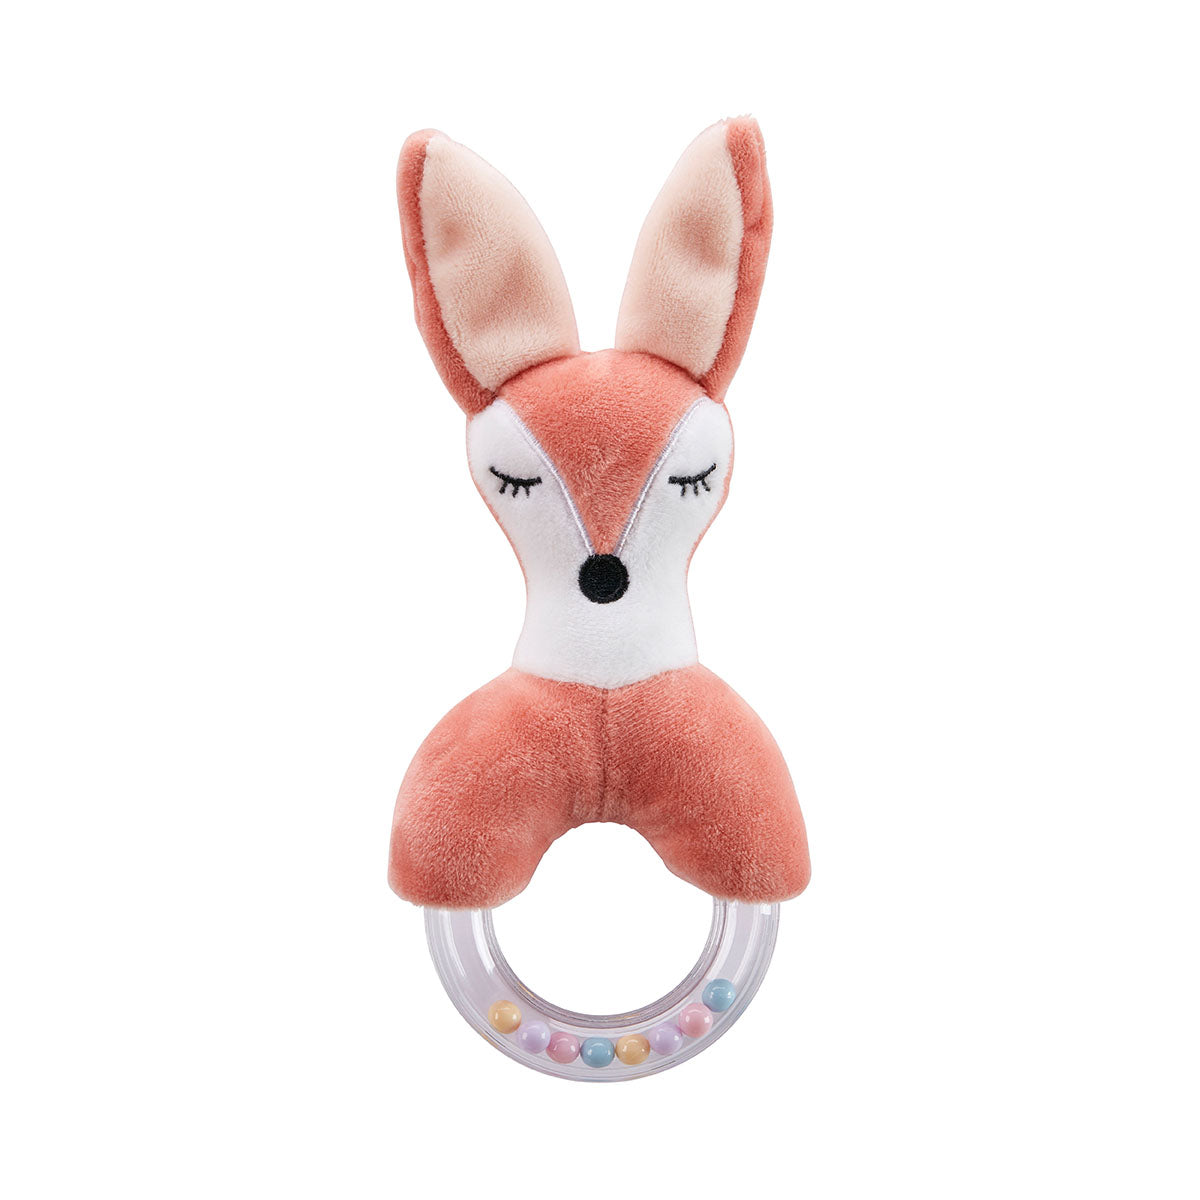 De Kid's Concept rammelaar vos edvin is een super leuk speeltje voor jouw kleintje. De rammelaar bestaat uit een ring met daarop een schattig knuffeltje van een vos. VanZus.